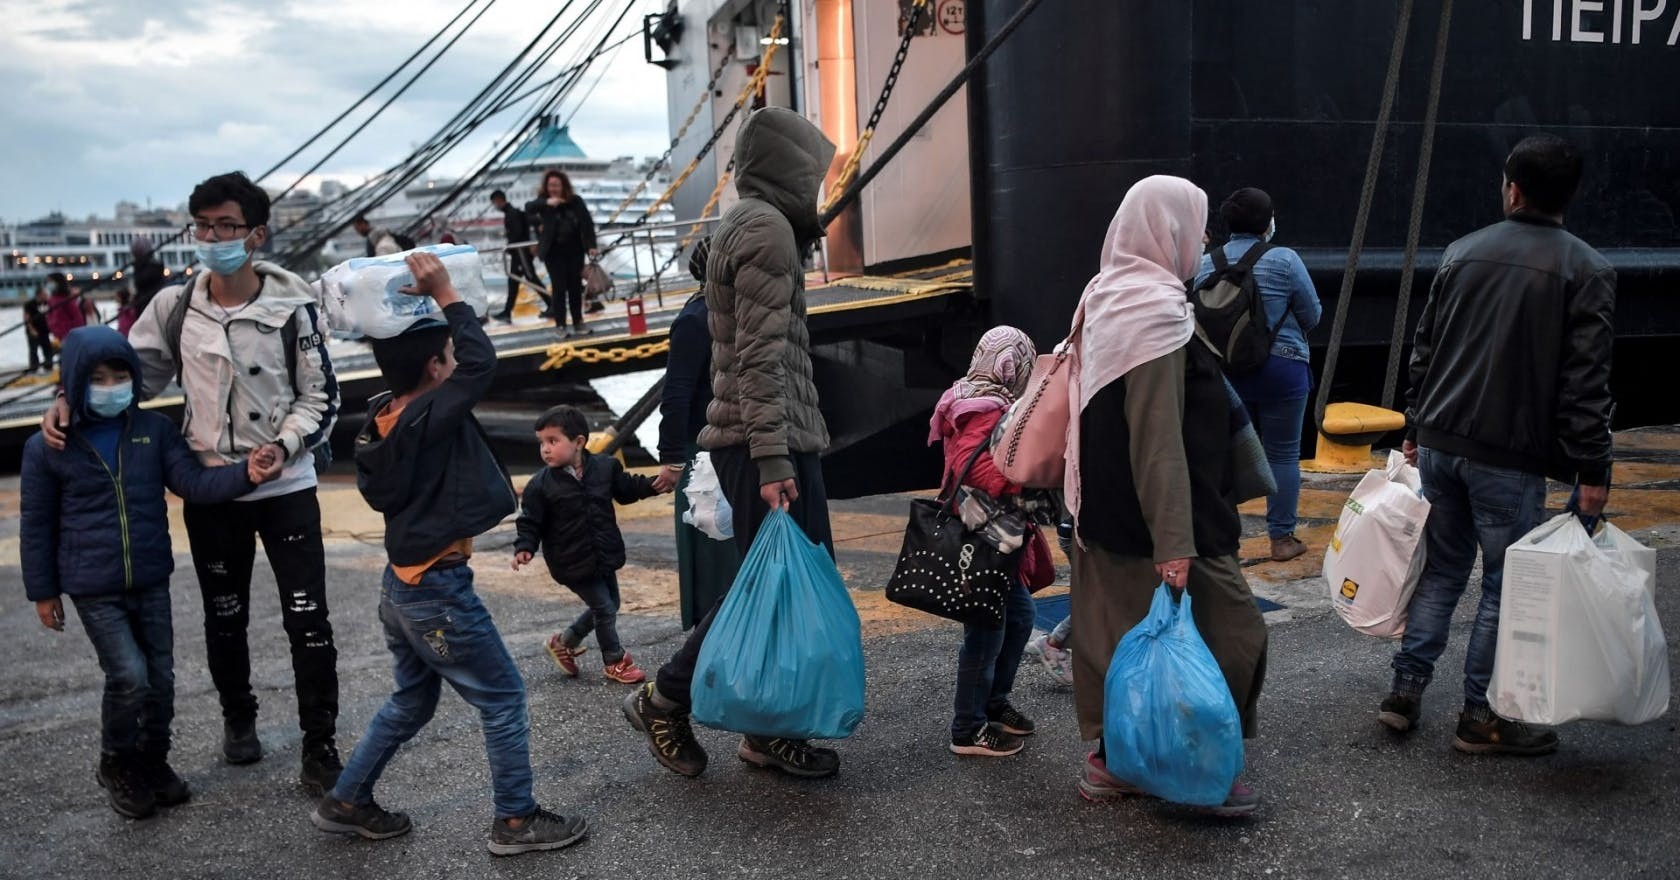 دول شمال أوروبا تسرع من ترحيل اللاجئين.. ضغوط لم يعد يتحملها الاقتصاد الأوروبي